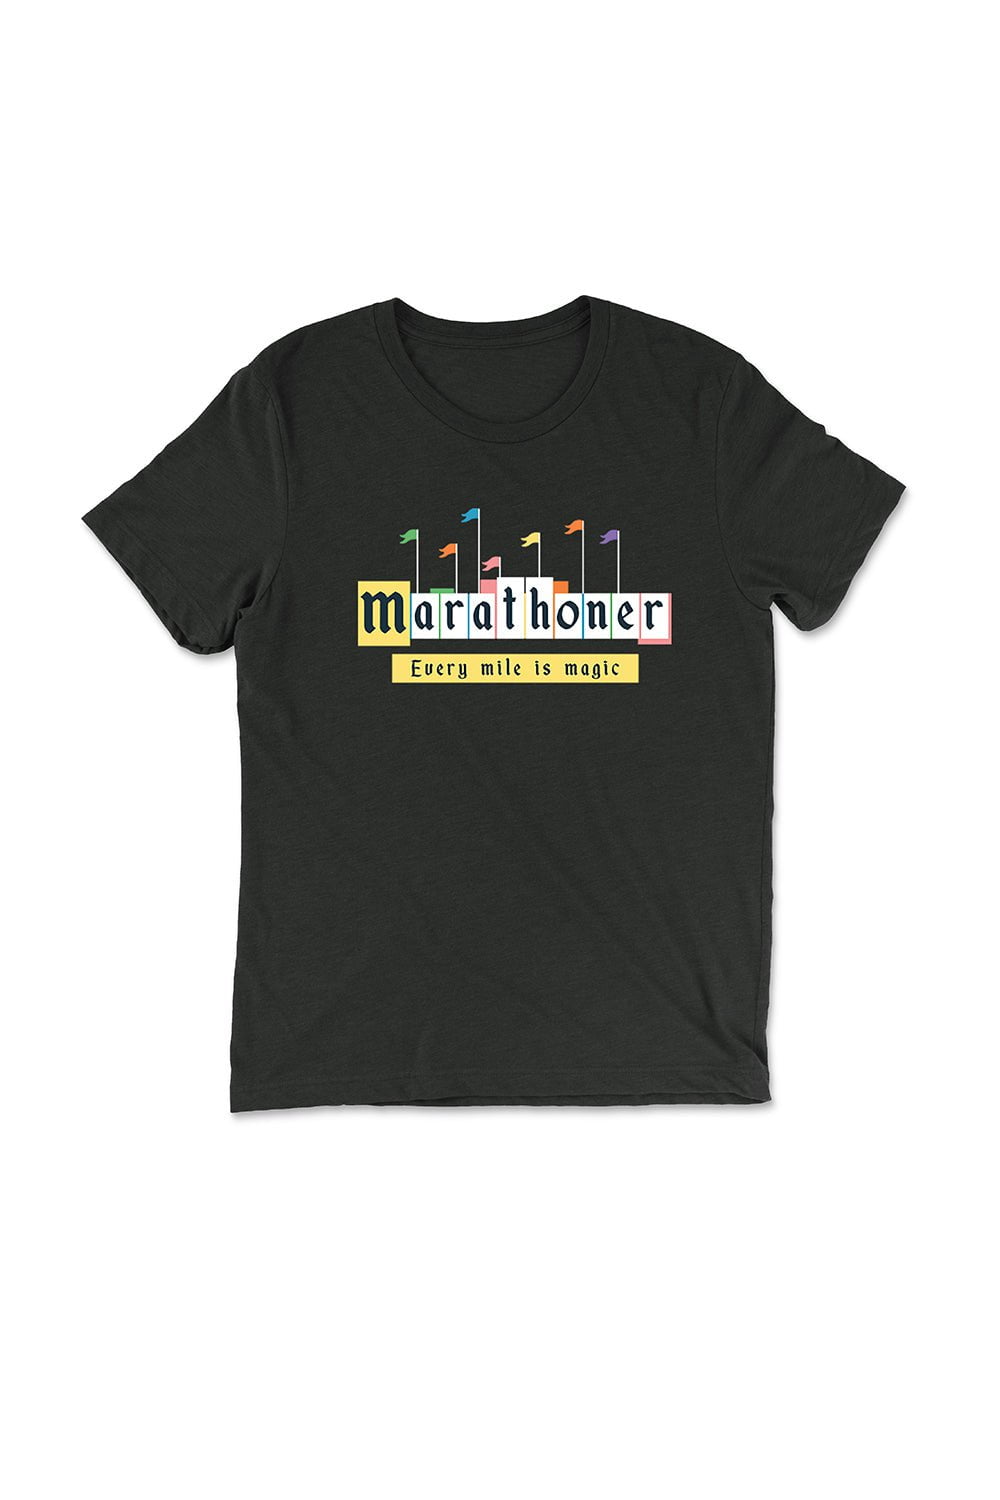 Sarah Marie Design Studio Unisex Tee Disney Marathoner T-Shirt